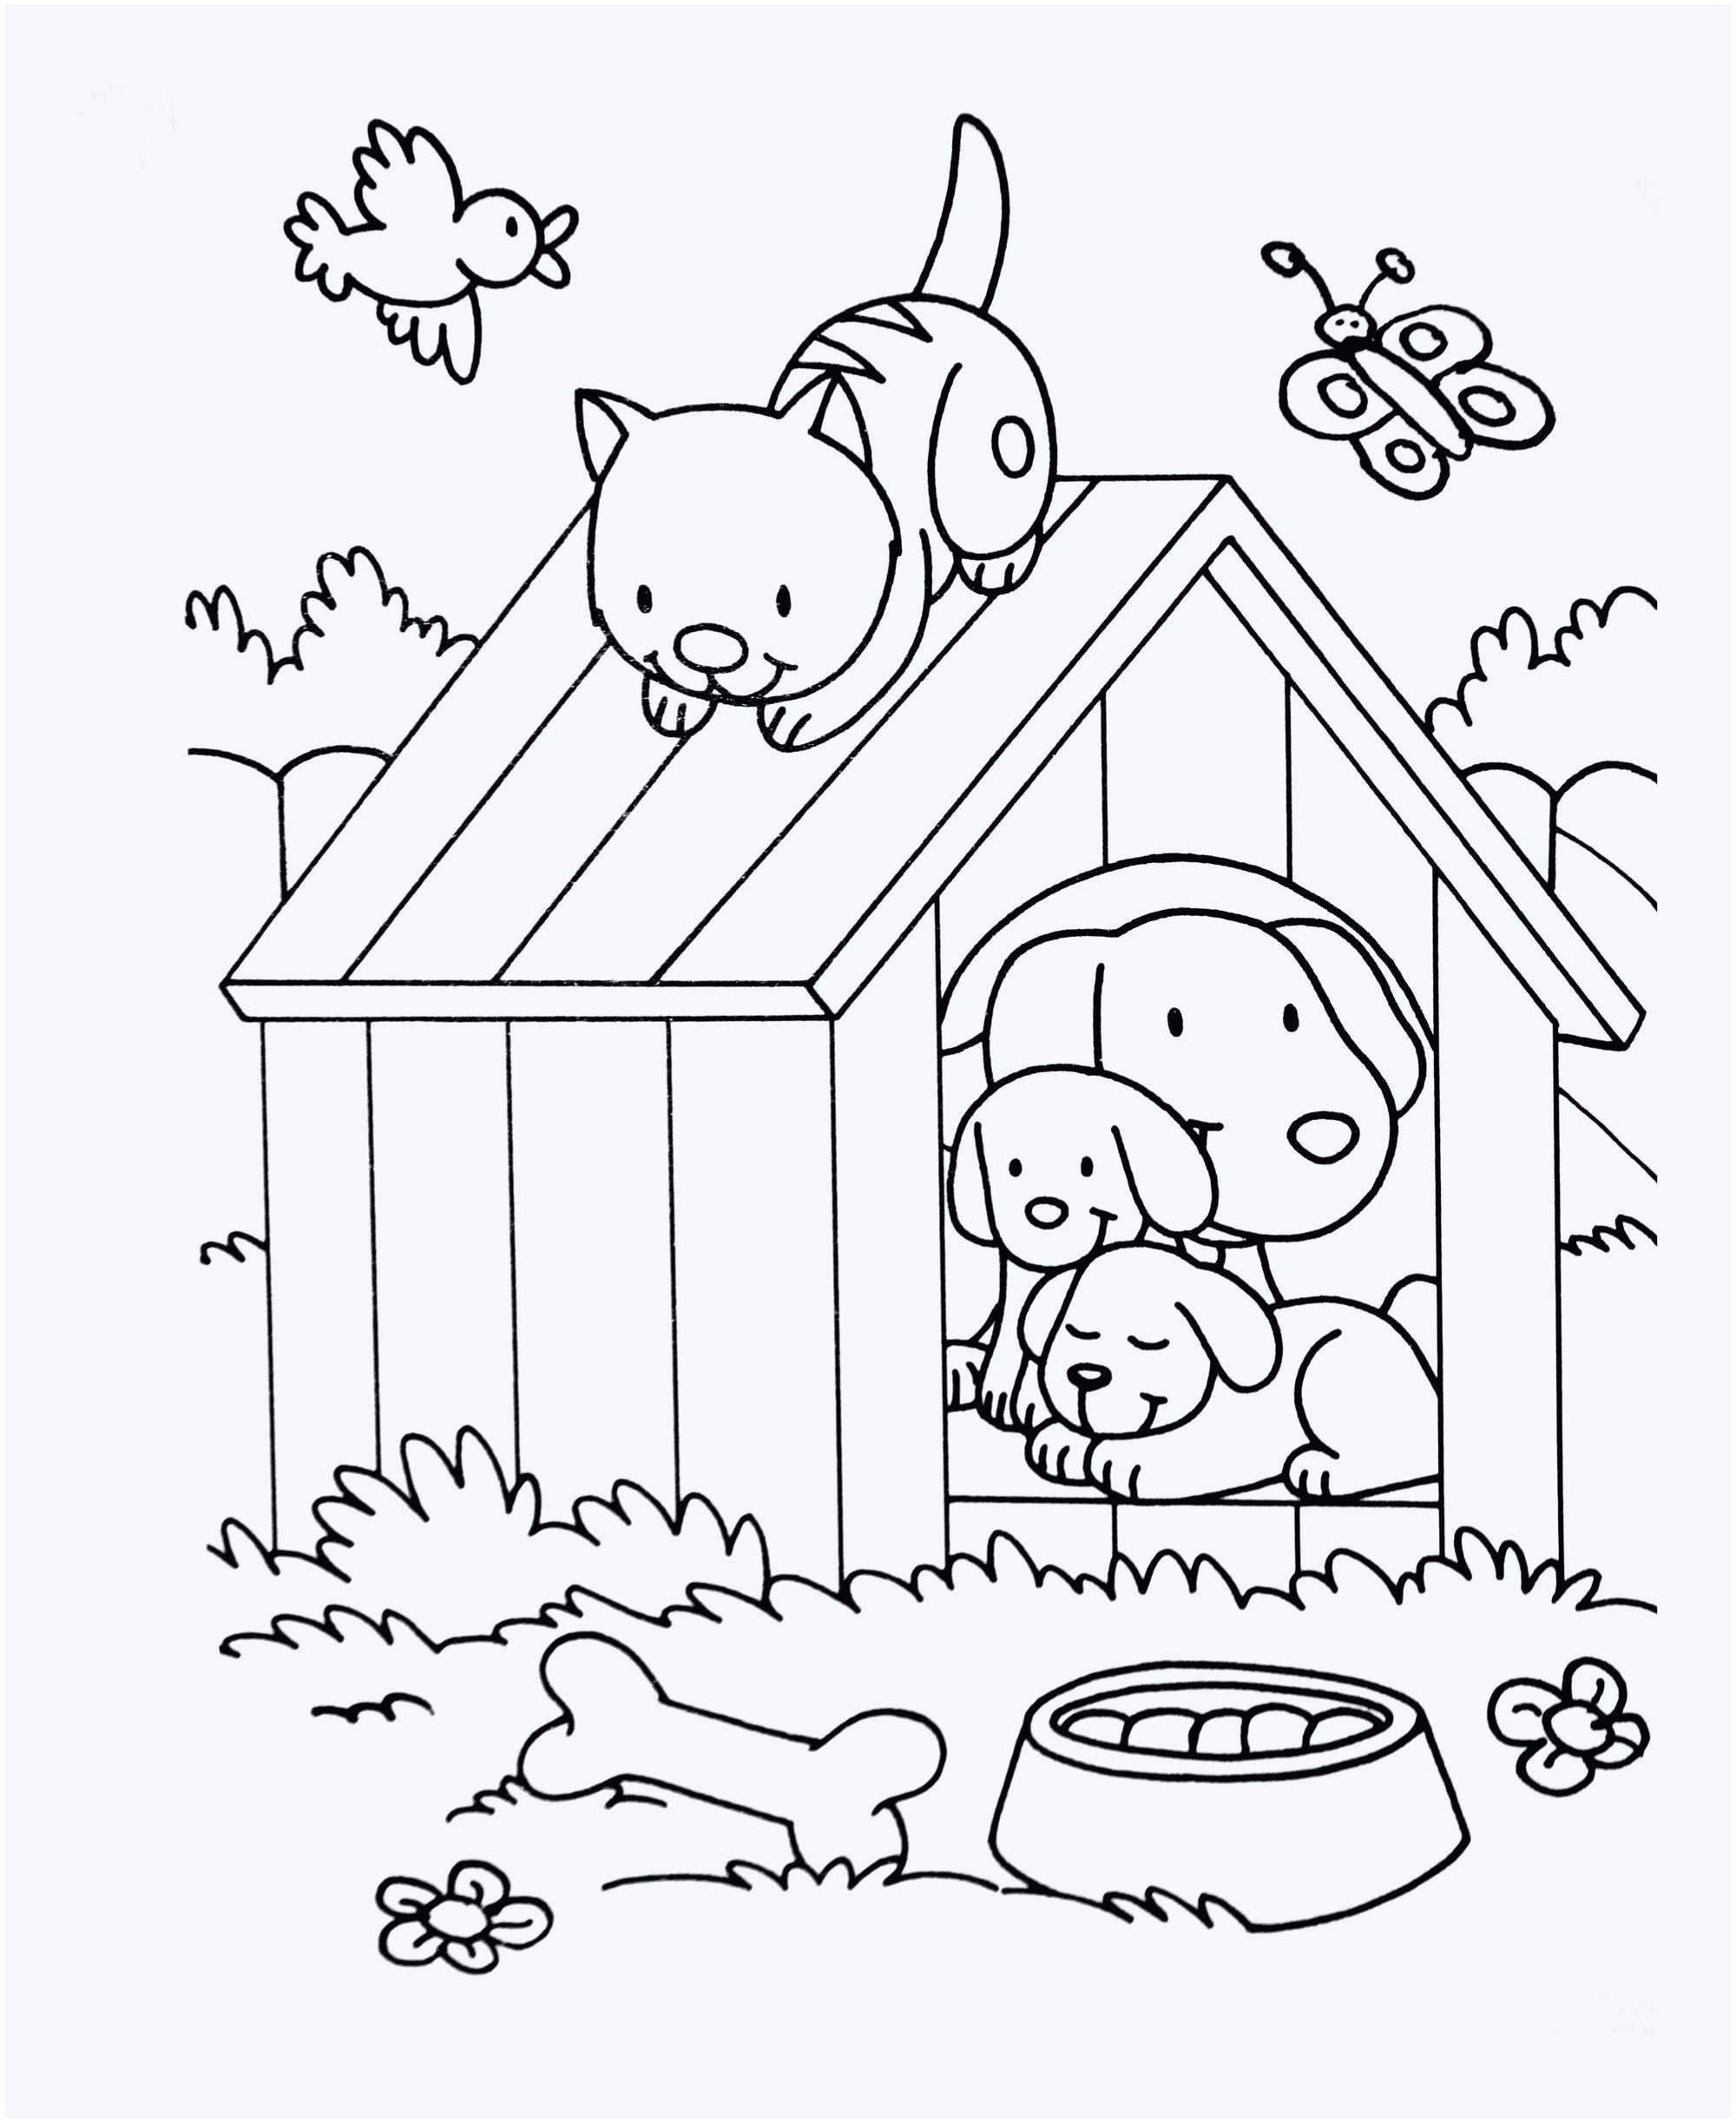 lapin de paques coloriage meilleur de 36 coloriage a imprimer pour enfant des images of lapin de paques coloriage